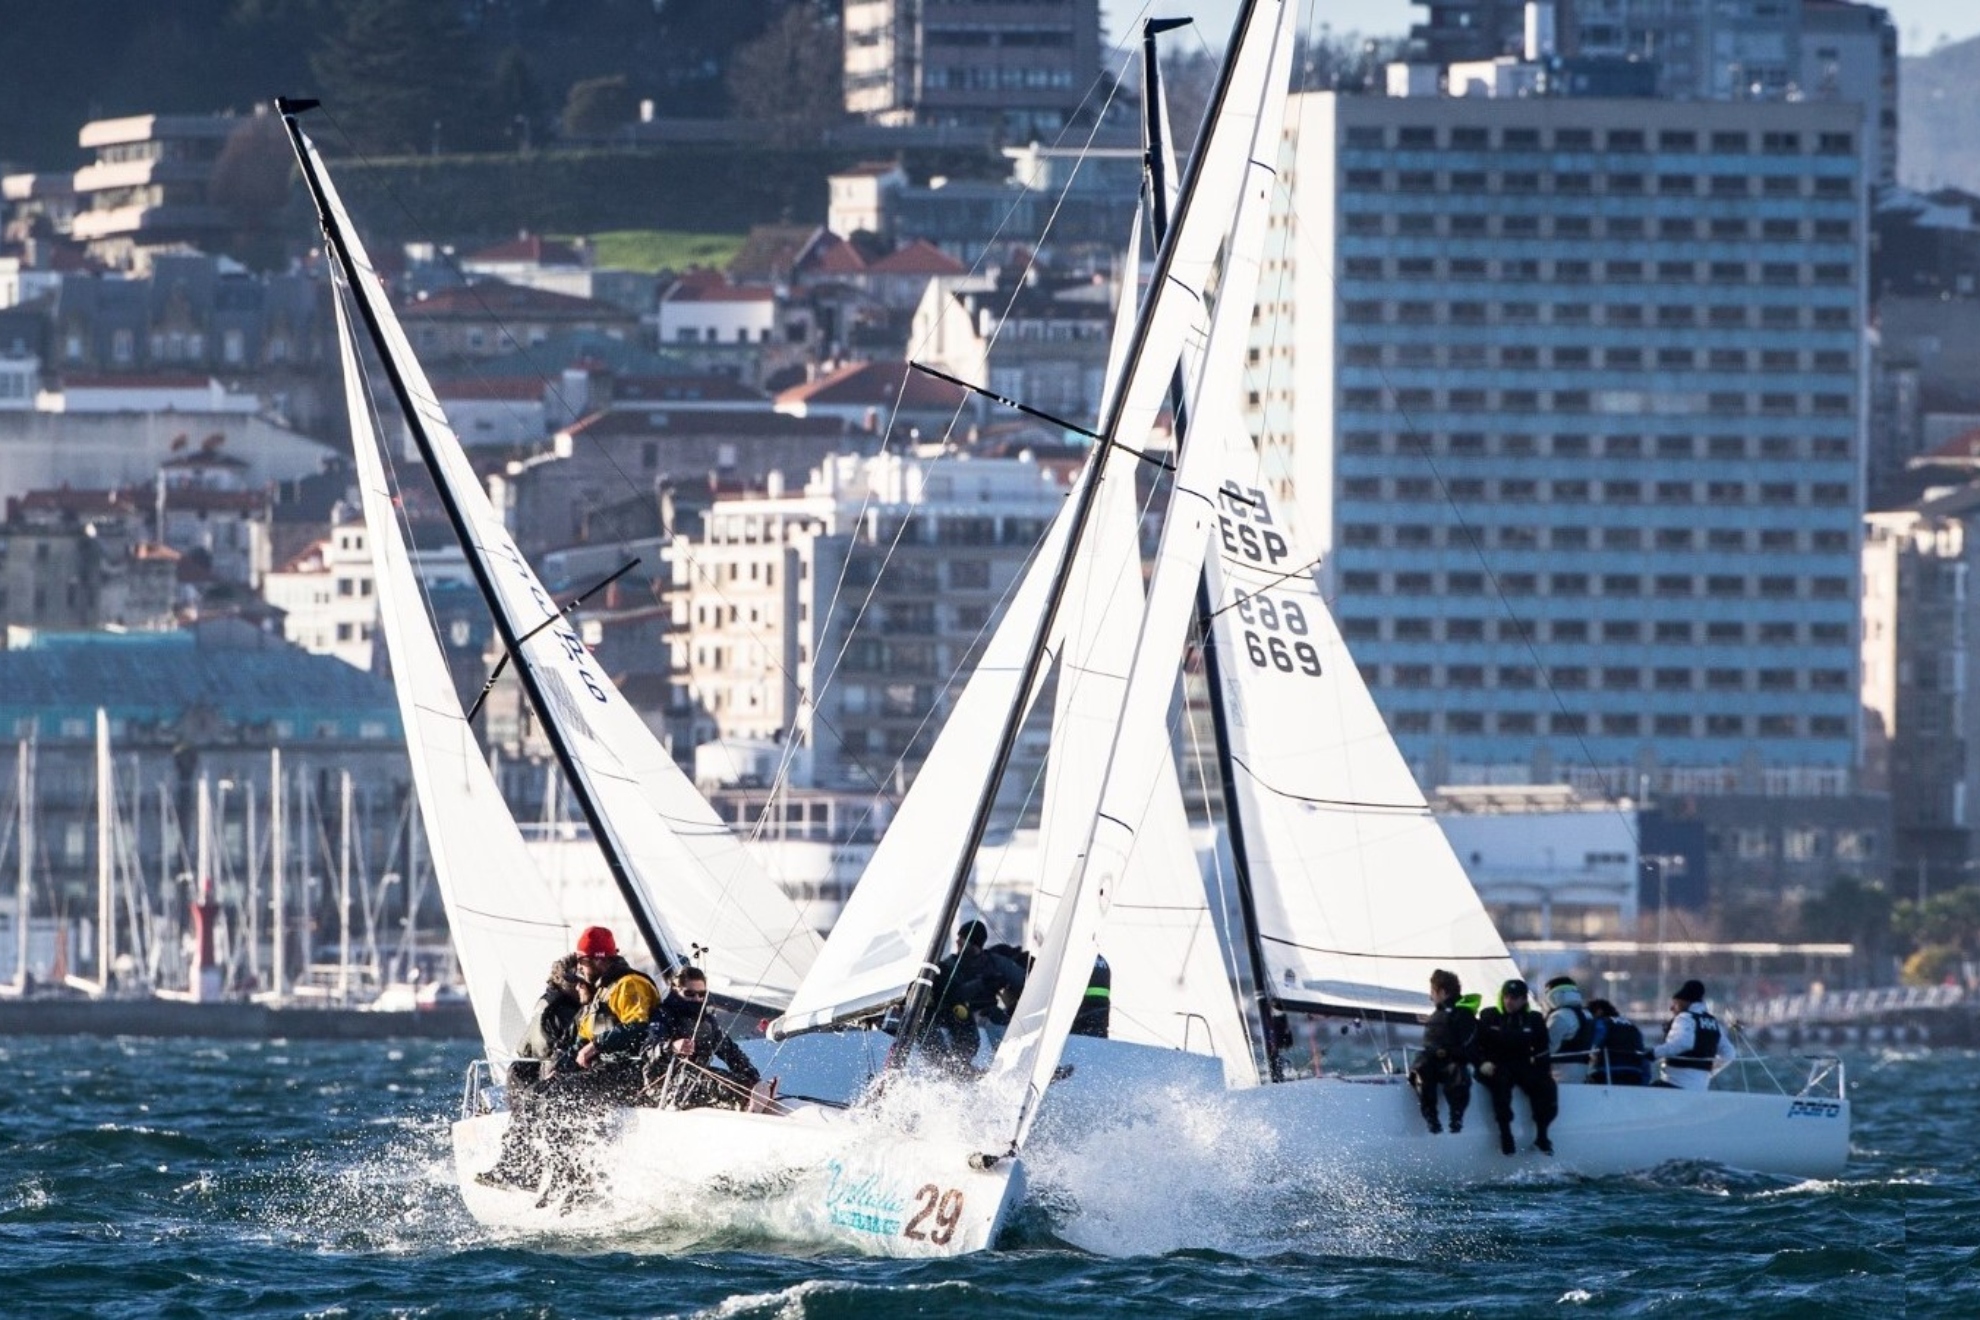 Muy dura la jornada inaugural de la temporada en Vigo de los J70 de 25 nudos del oeste.